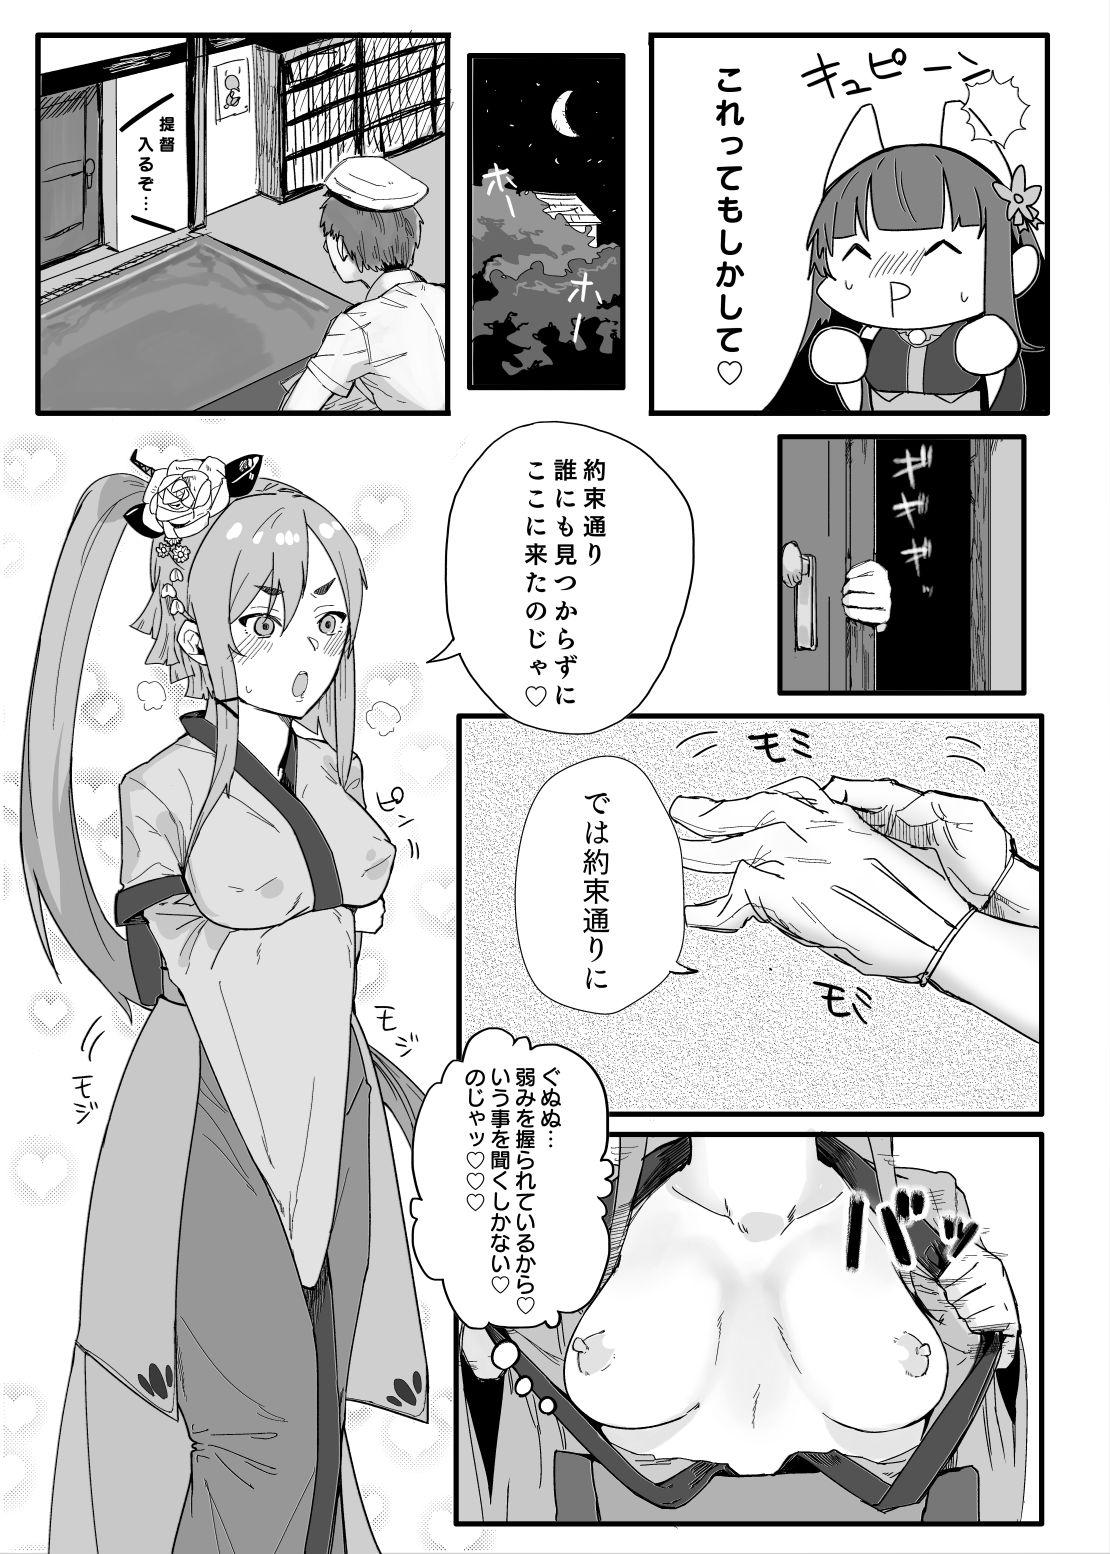 Sex Akagi-san wa Sore o Gaman dekinai - Warship girls Russia - Page 7